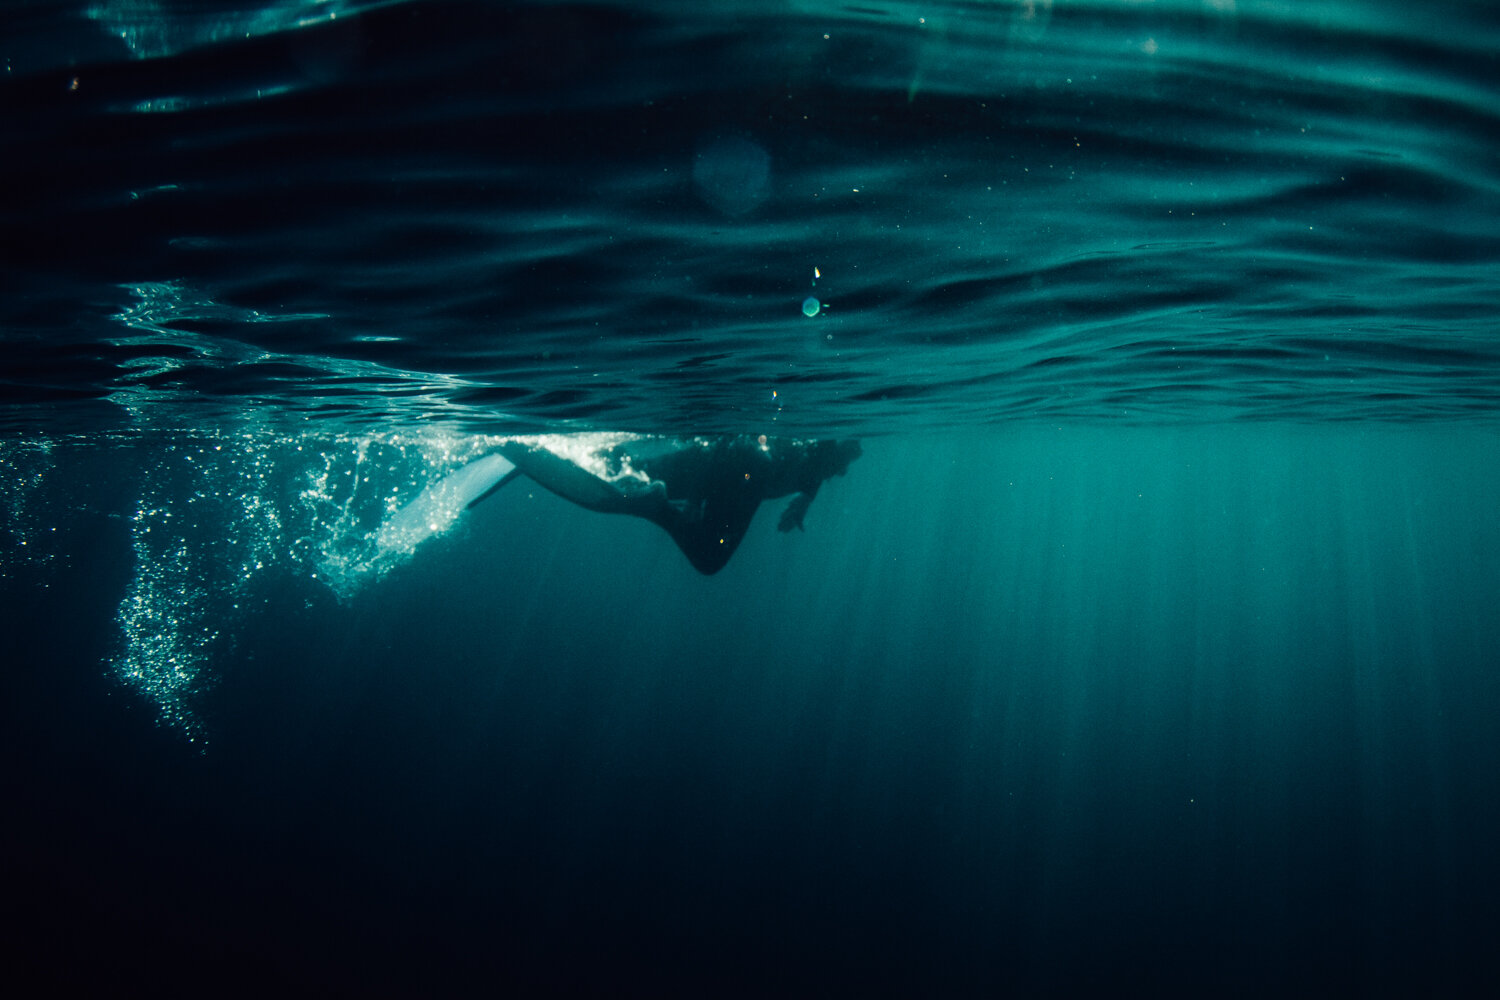 Krista Espino corse corsica photograph photographe photographer europe underwater freedive dive diving explore adventure ajaccio corse-du-sud sea mediterranean island france french_-13.jpg